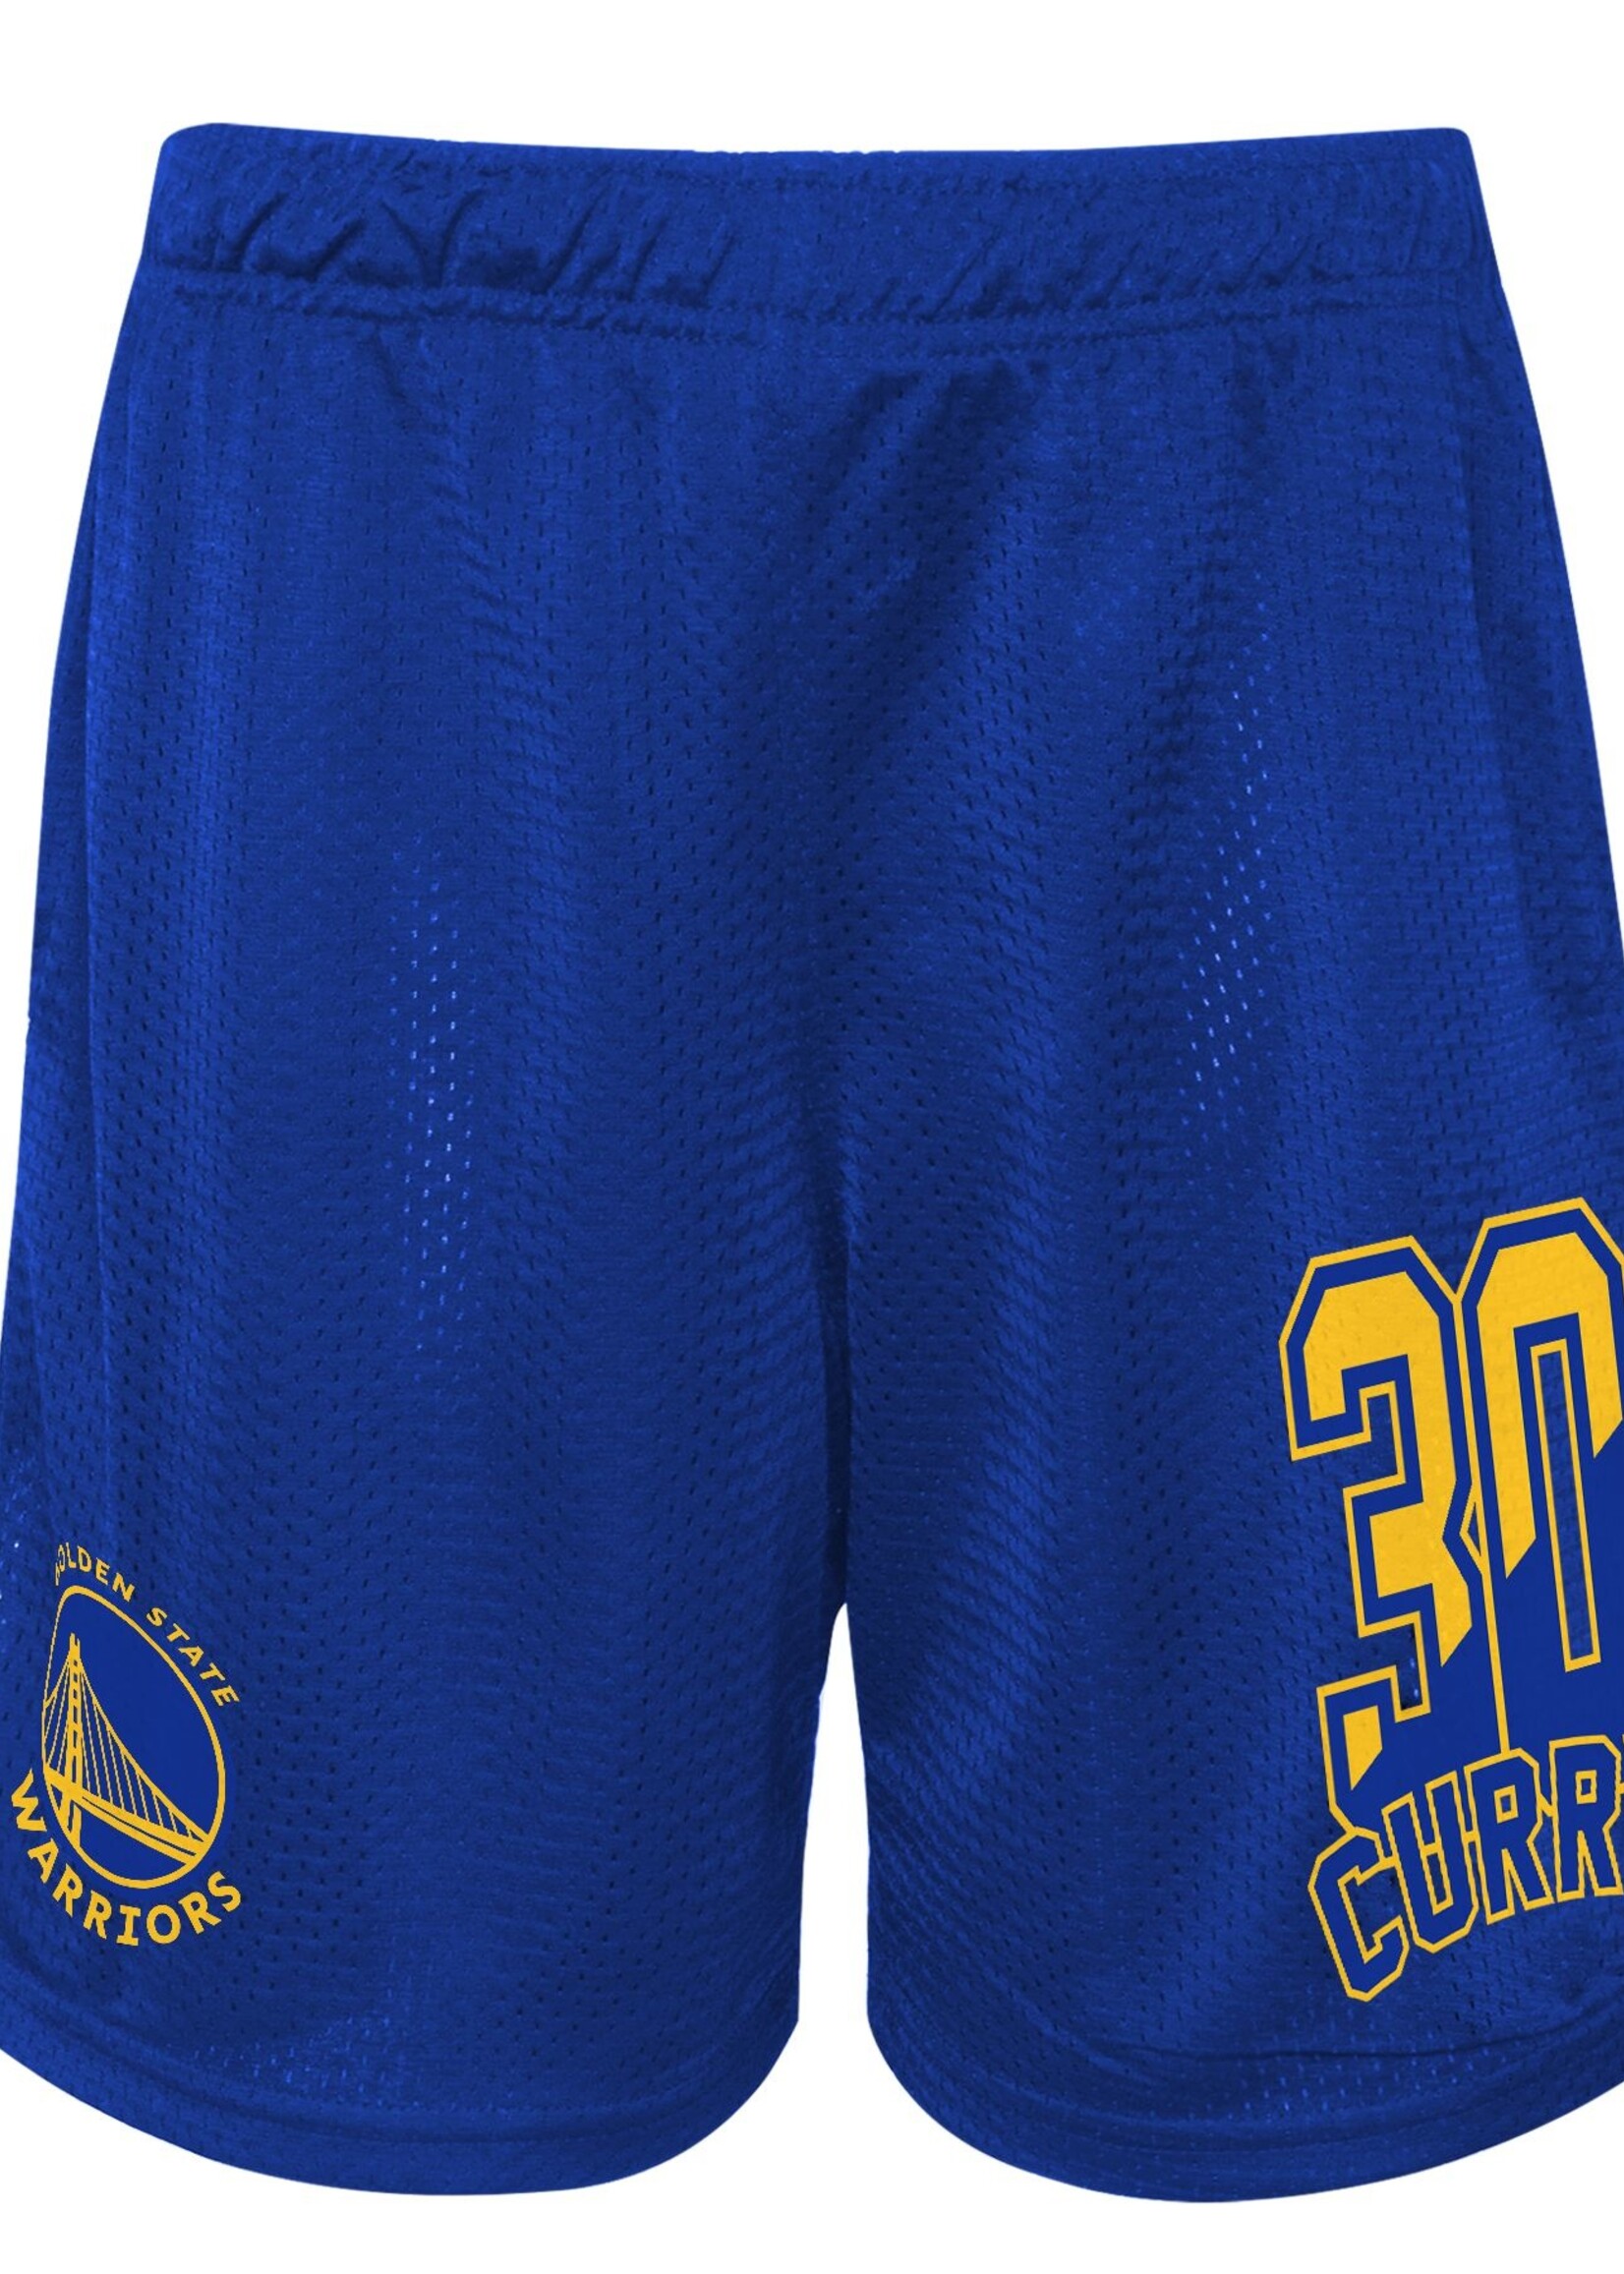 Outerstuff NBA Steph Curry Short Blue 2.0